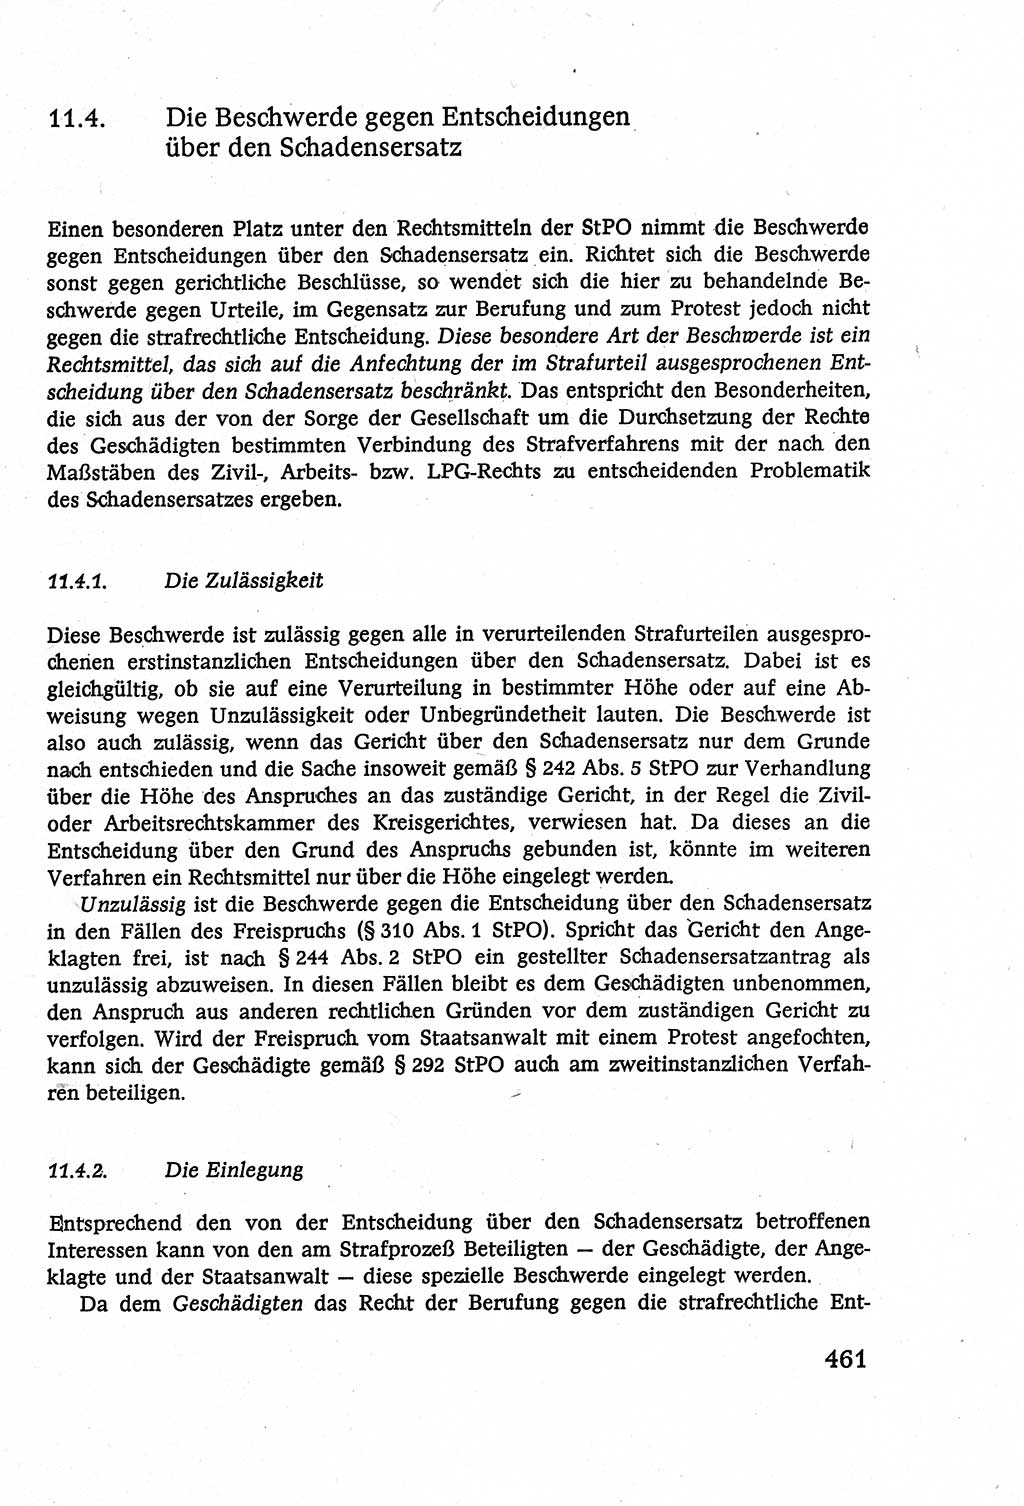 Strafverfahrensrecht [Deutsche Demokratische Republik (DDR)], Lehrbuch 1977, Seite 461 (Strafverf.-R. DDR Lb. 1977, S. 461)